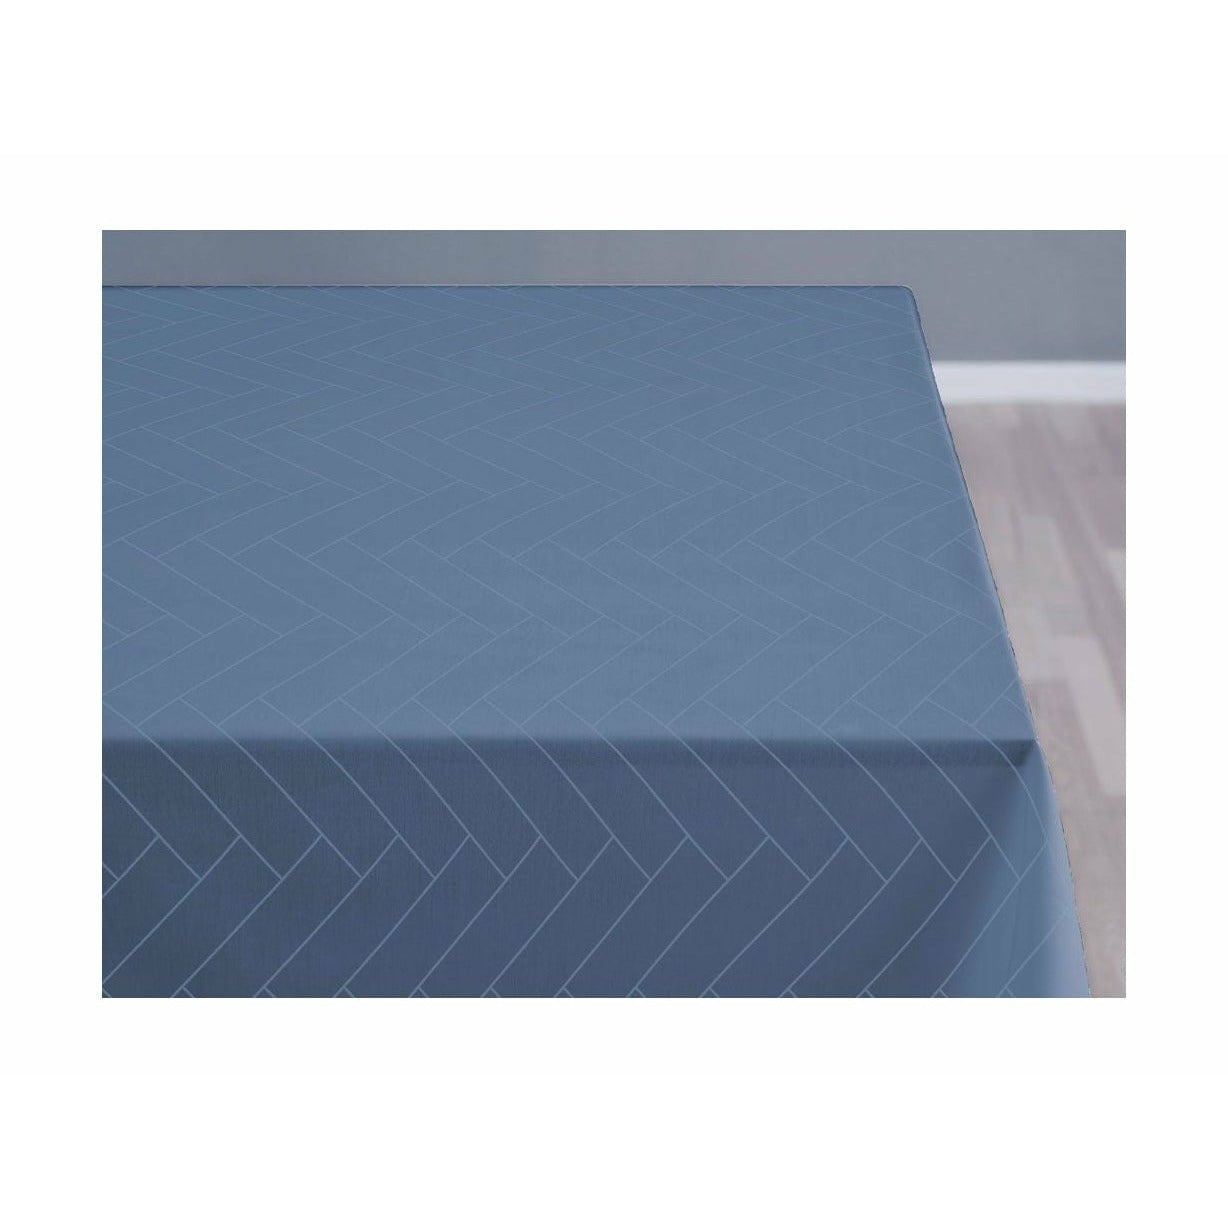 Södahl Carreaux damasques nappe 370x140 cm, bleu ciel